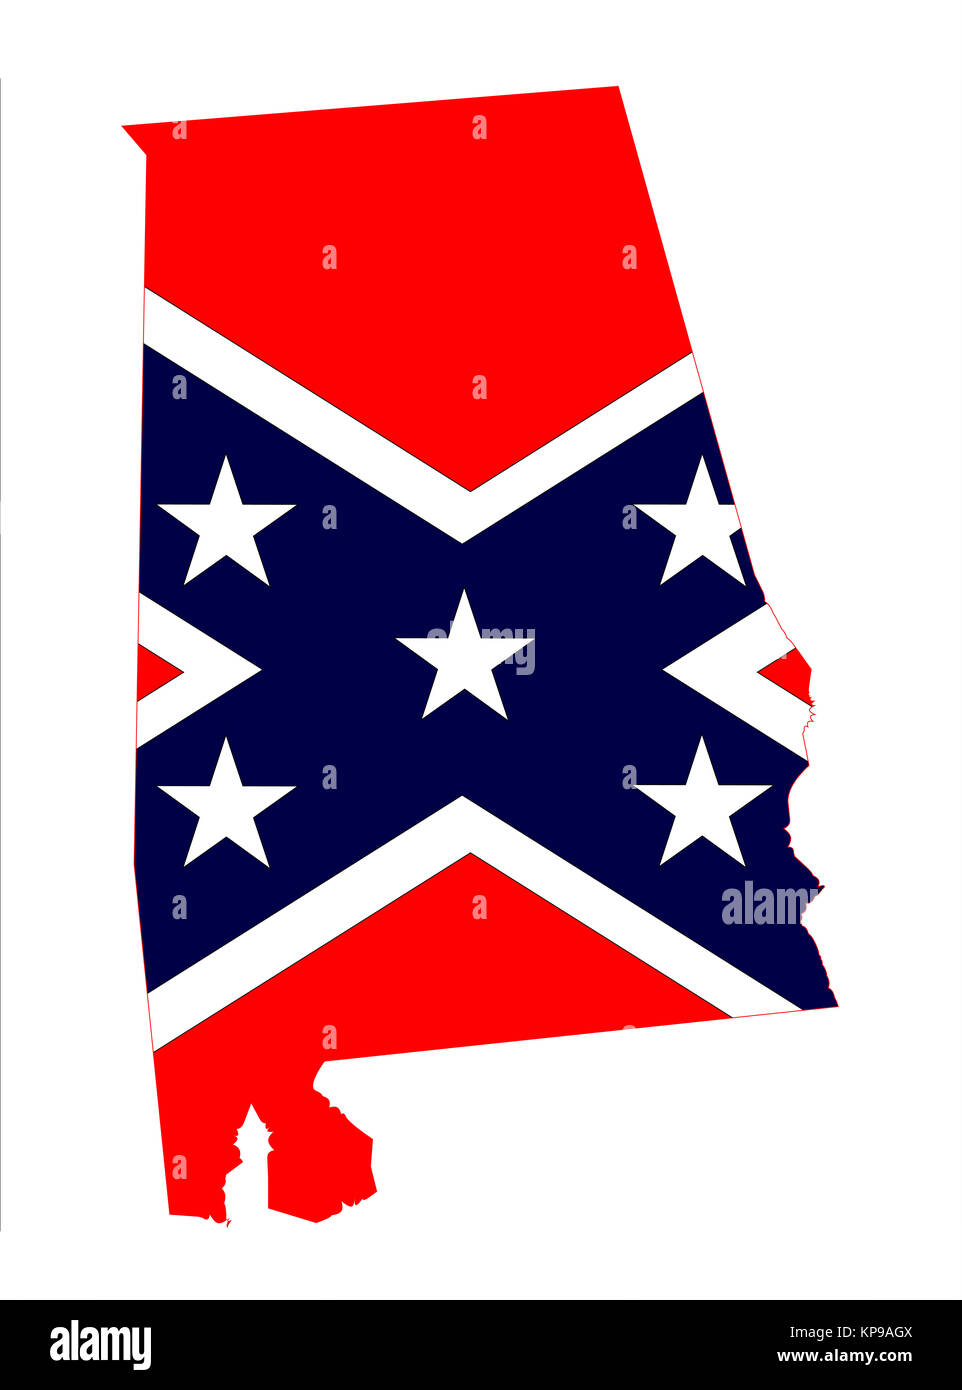 Alabama State avec drapeau confédéré Banque D'Images